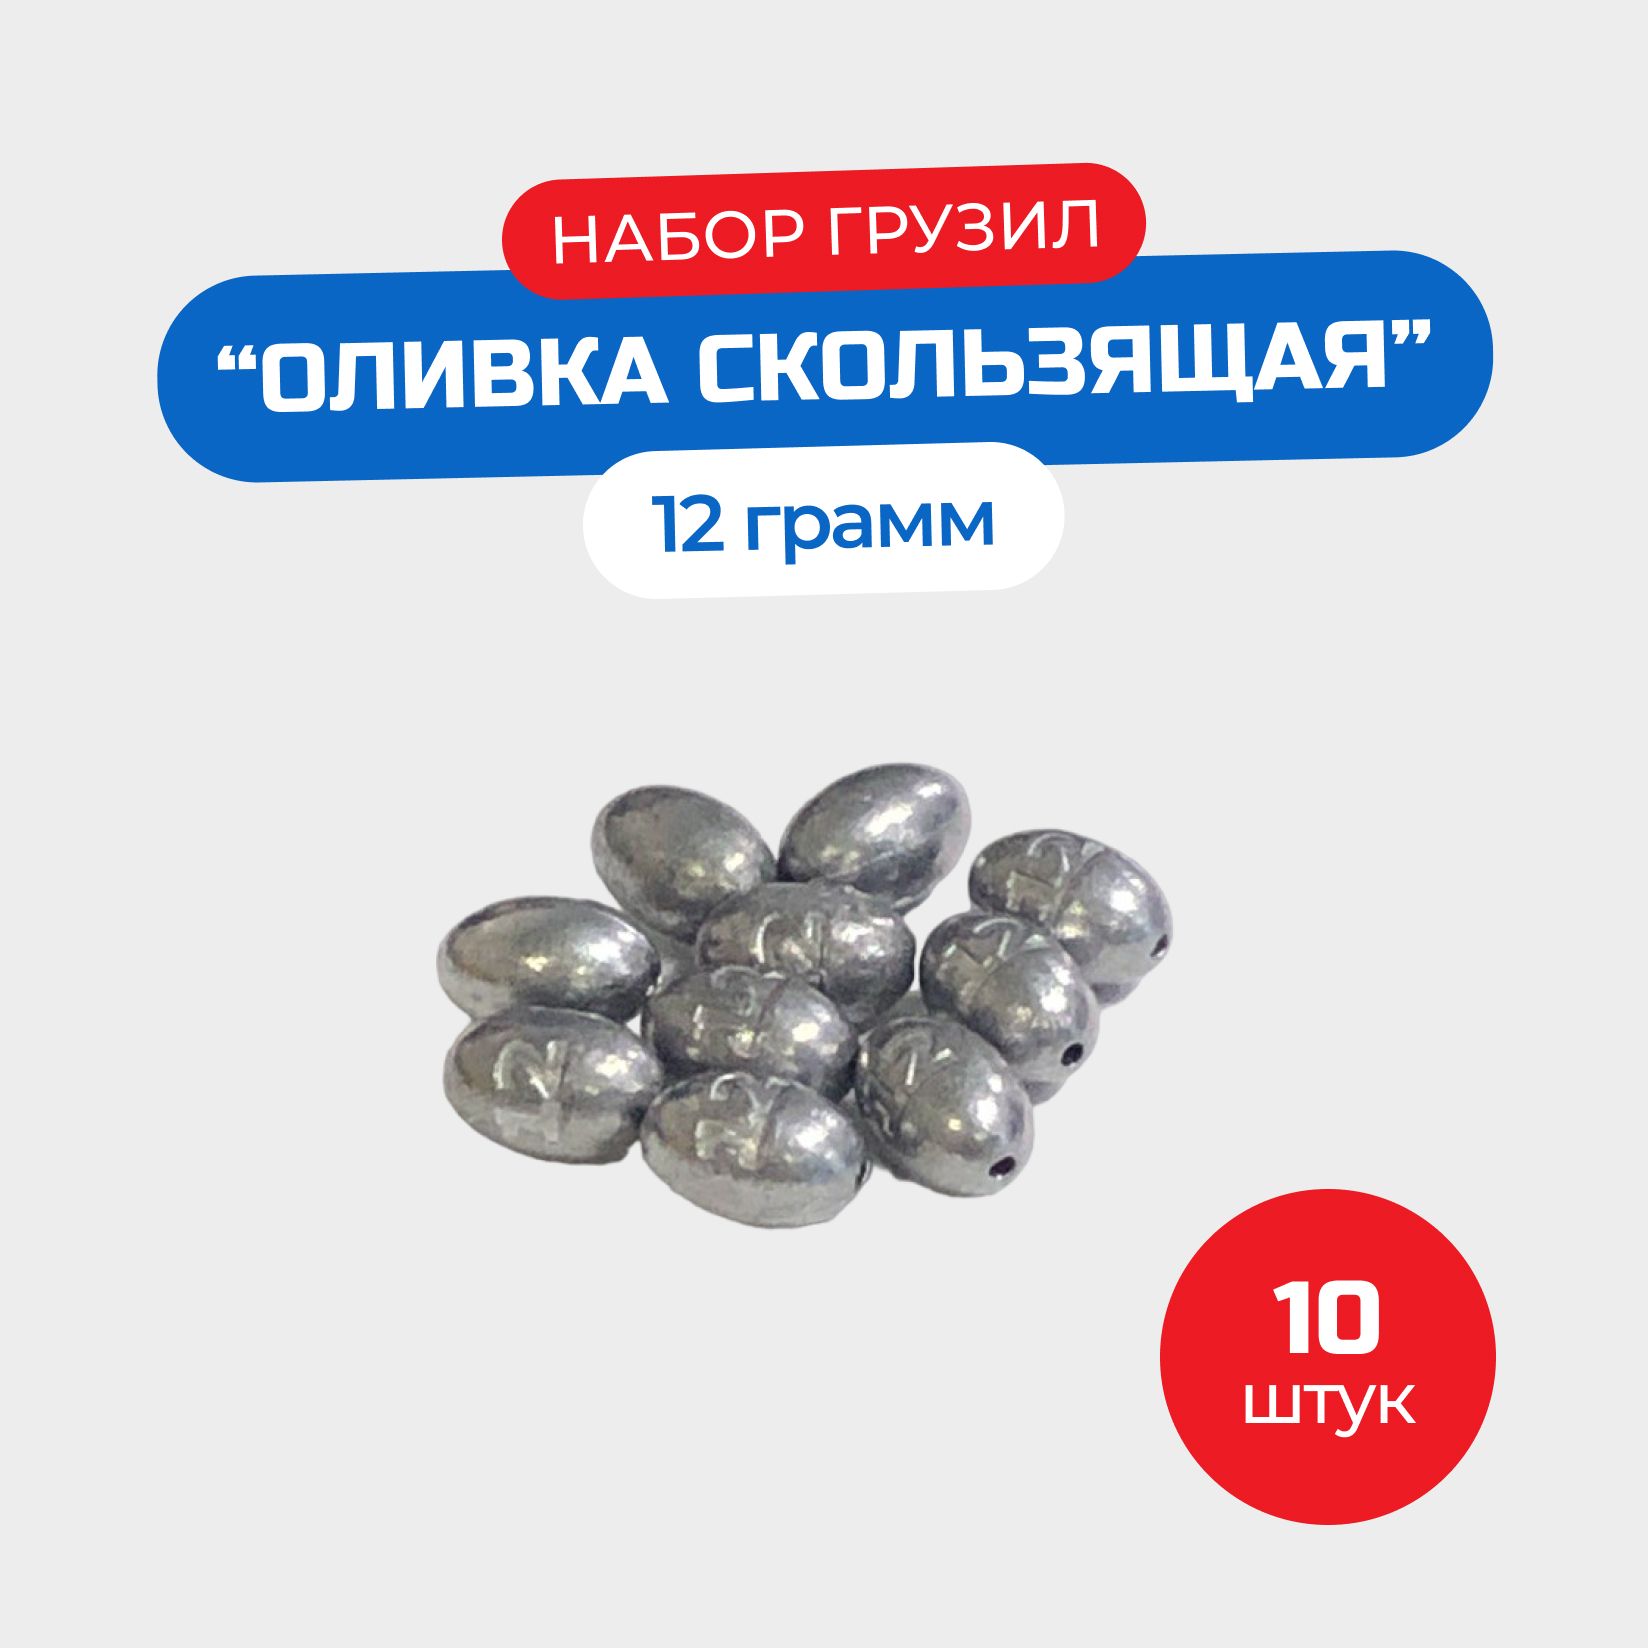 Набор грузил Оливка скользящая 12 грамм - 10 штук - купить по выгодной  цене в интернет-магазине OZON (1380338433)